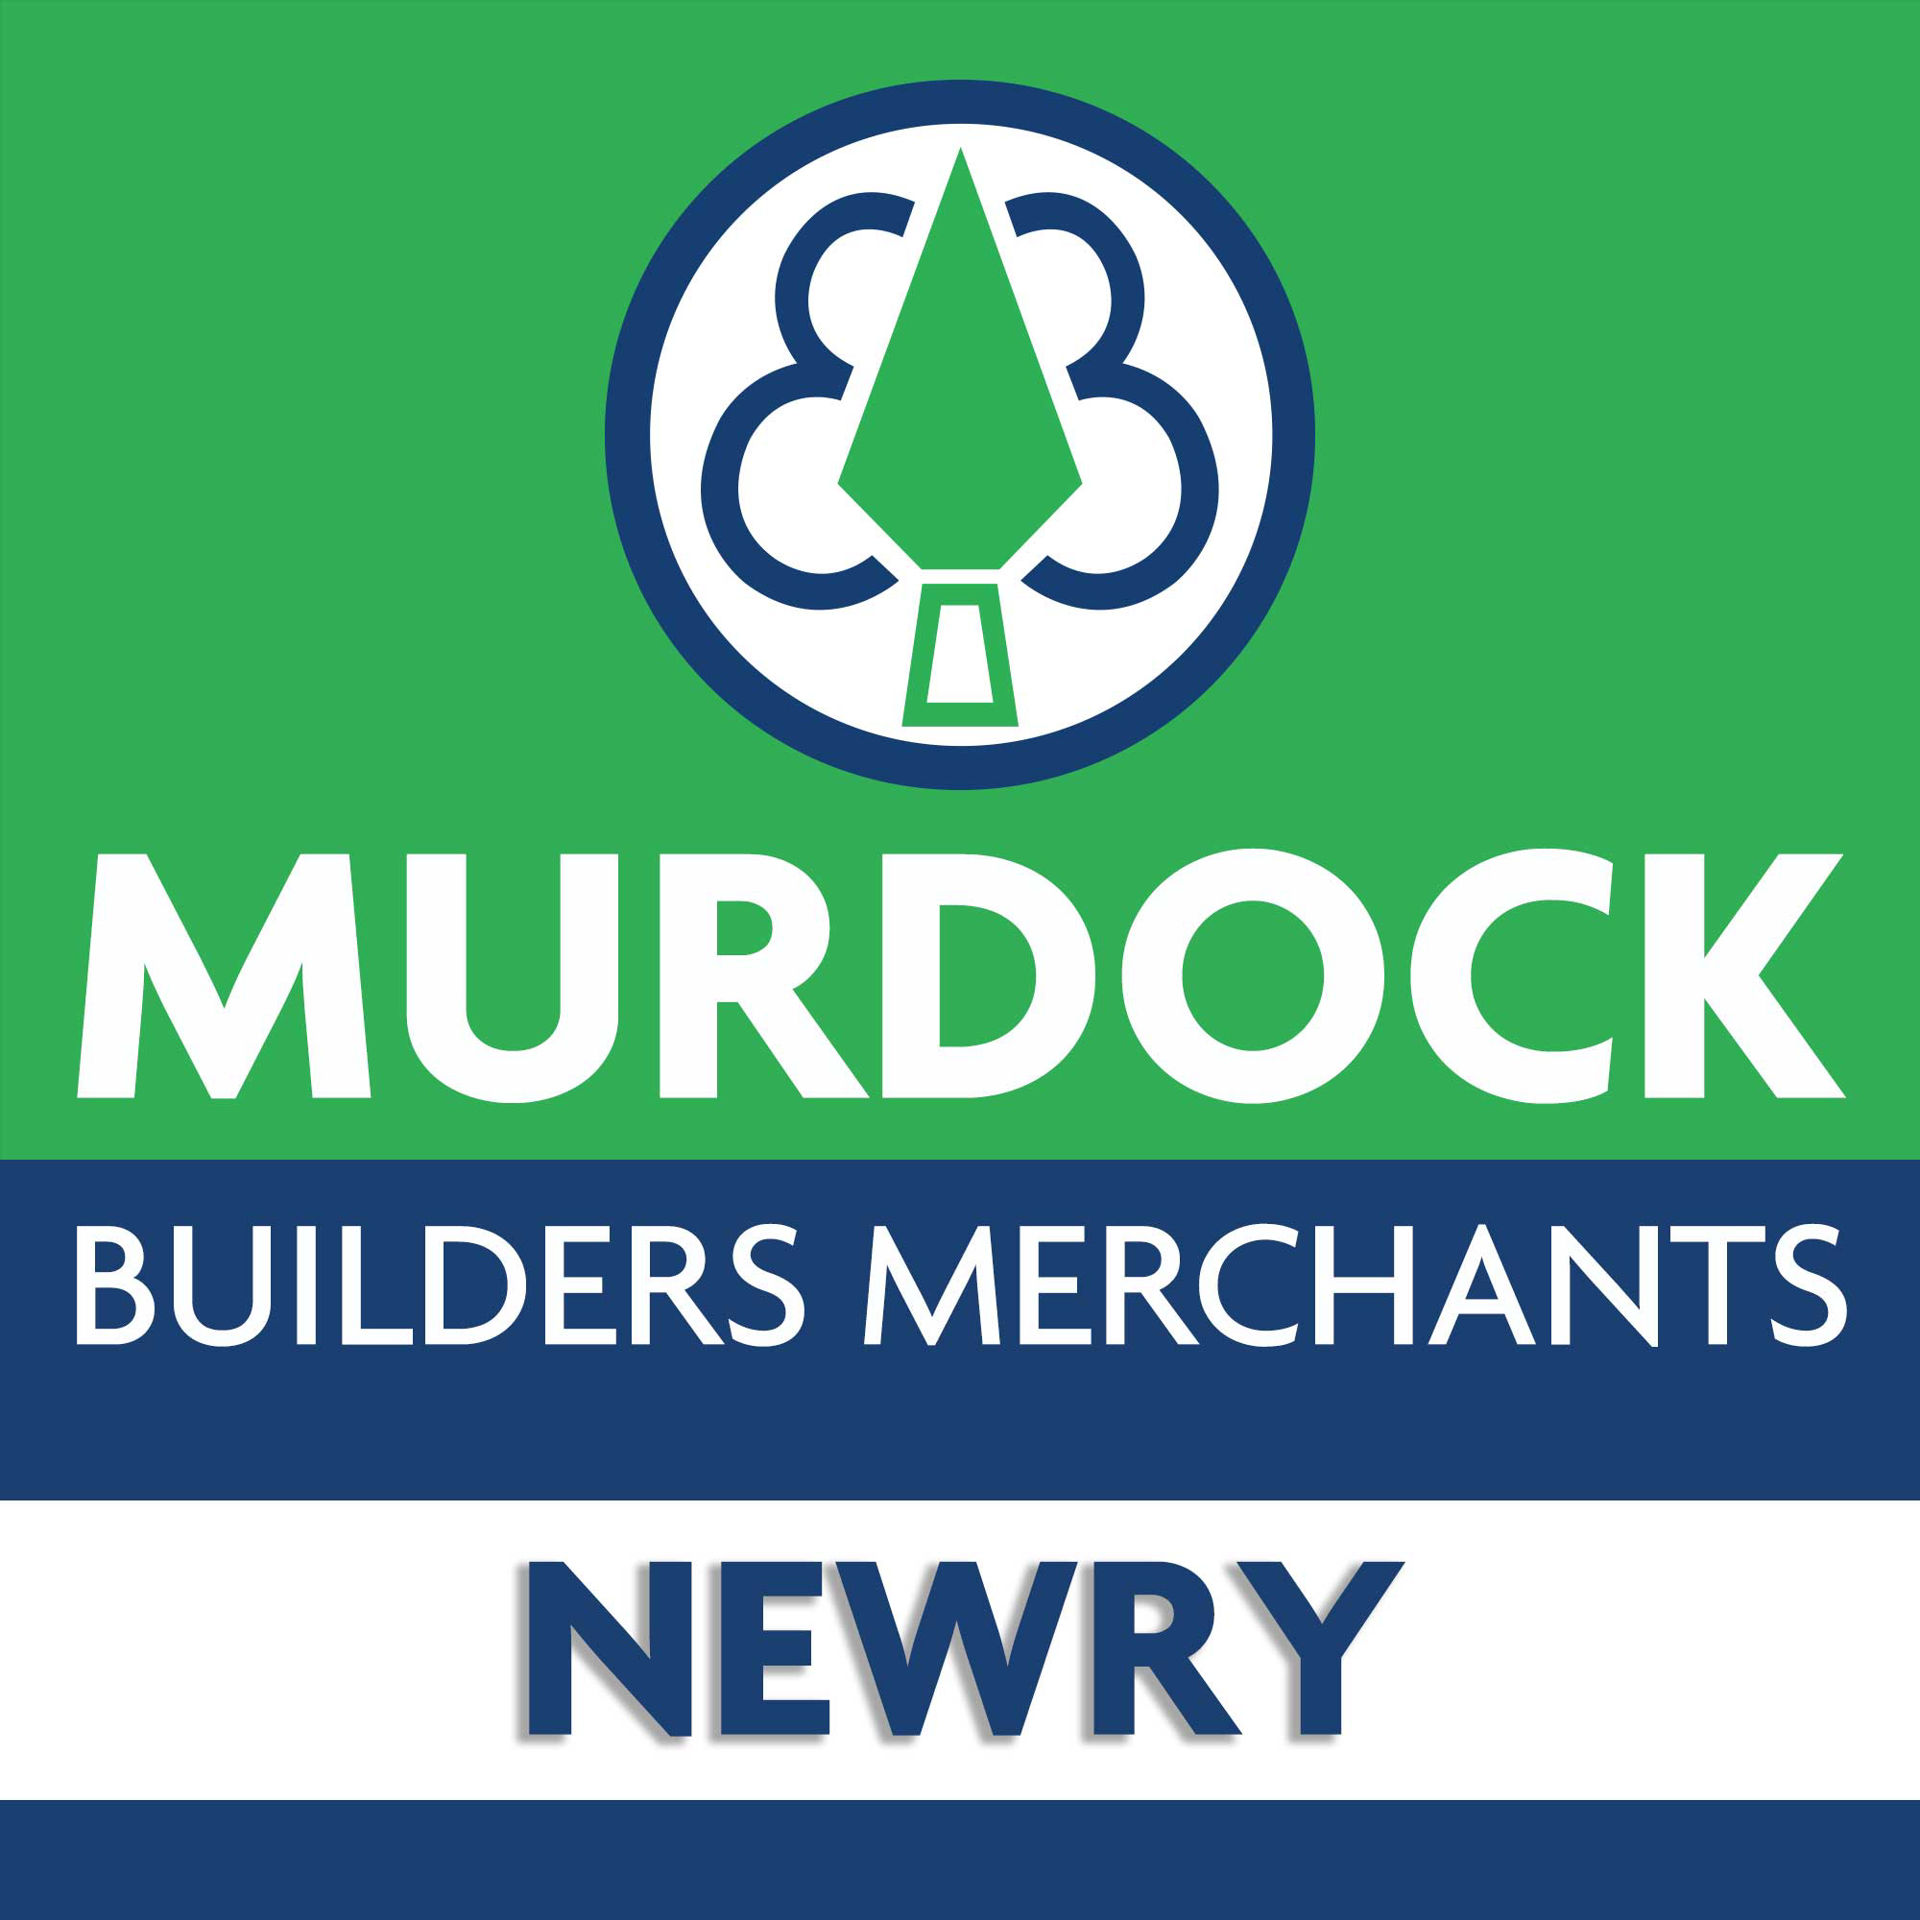 Newry Building Supplies Building Materials And Timber Supplier In Newry Building Supplies Northern Irelandmurdock Builders Merchants